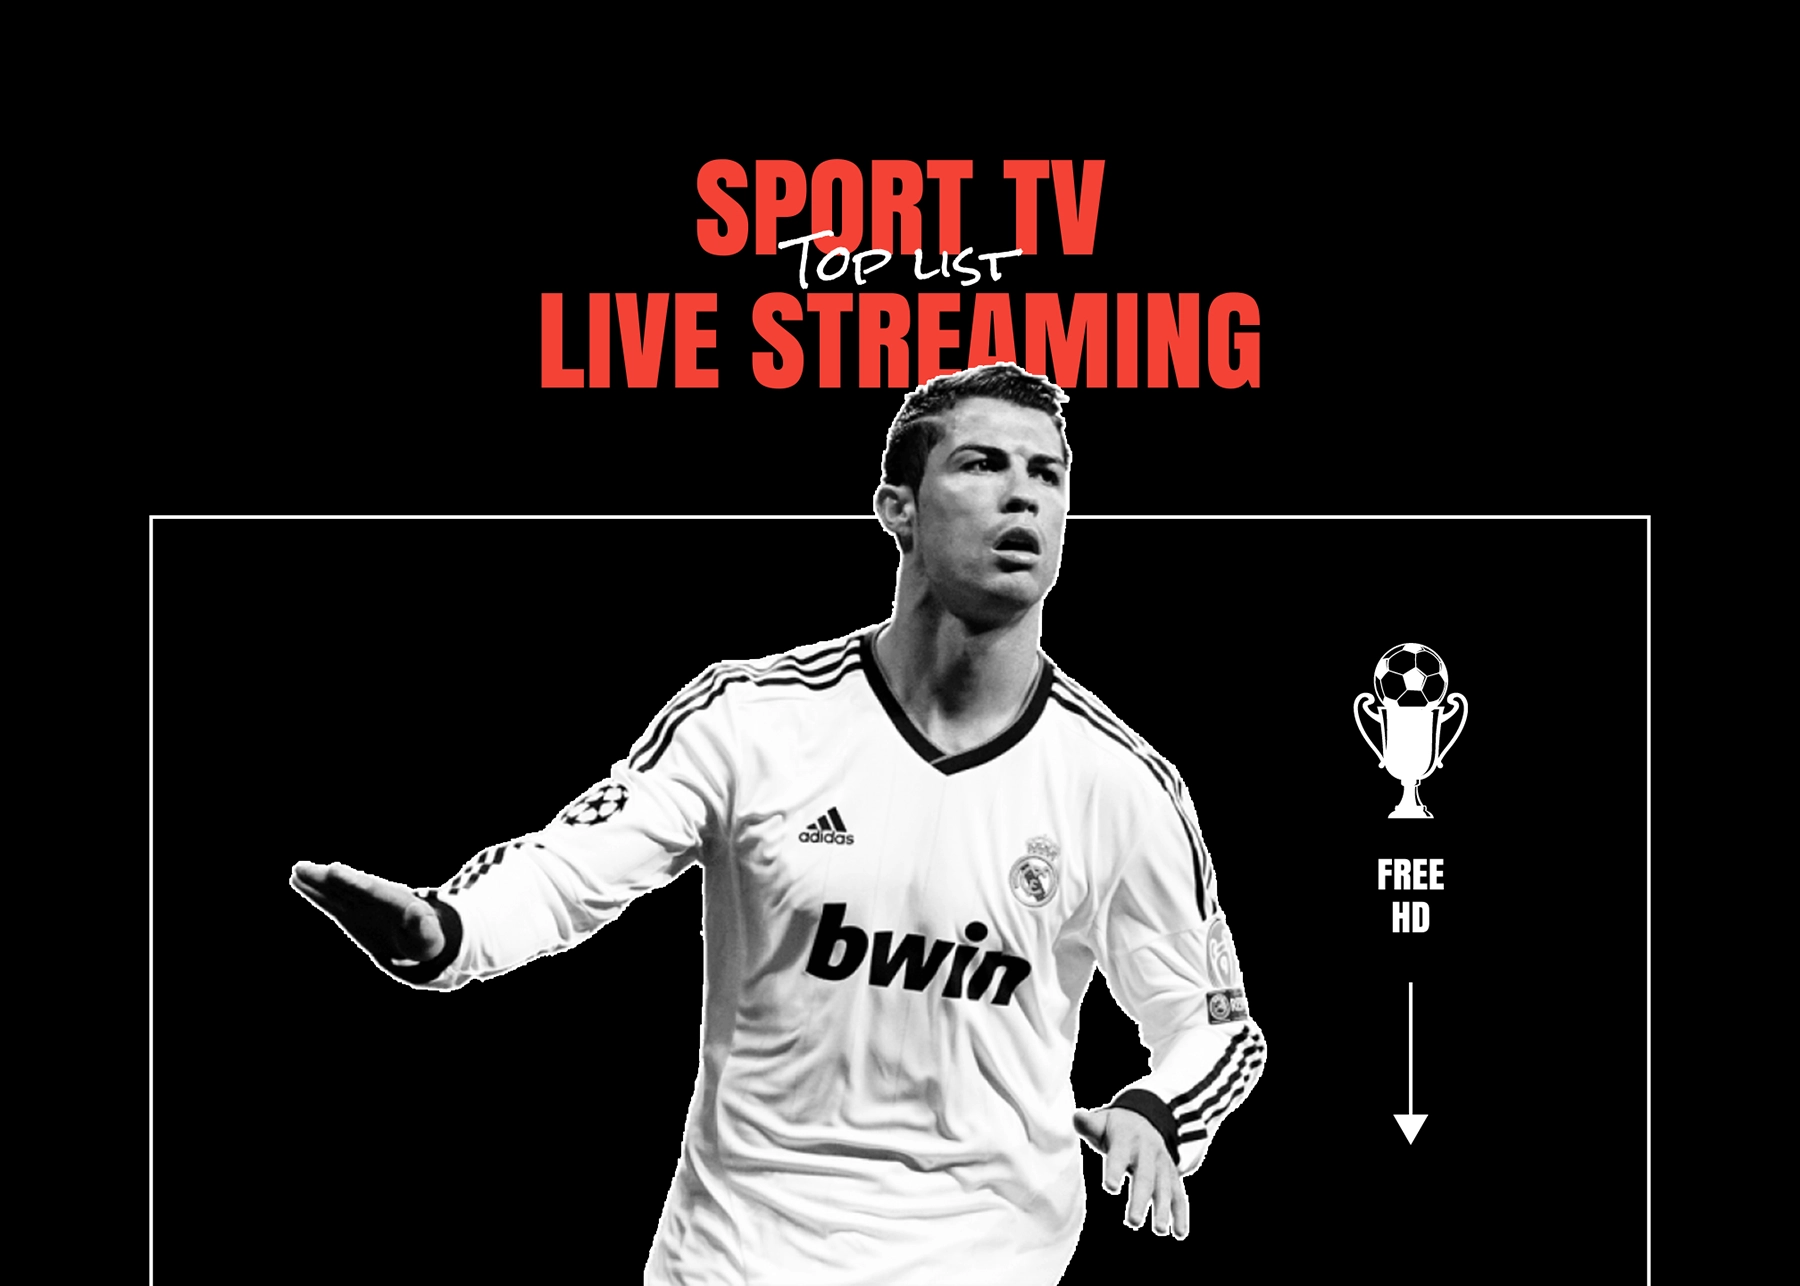 Sporta Televido Live Streaming: 10 Plej bonaj Live Stream Sportaj Lokoj Senpaga kaj Plena